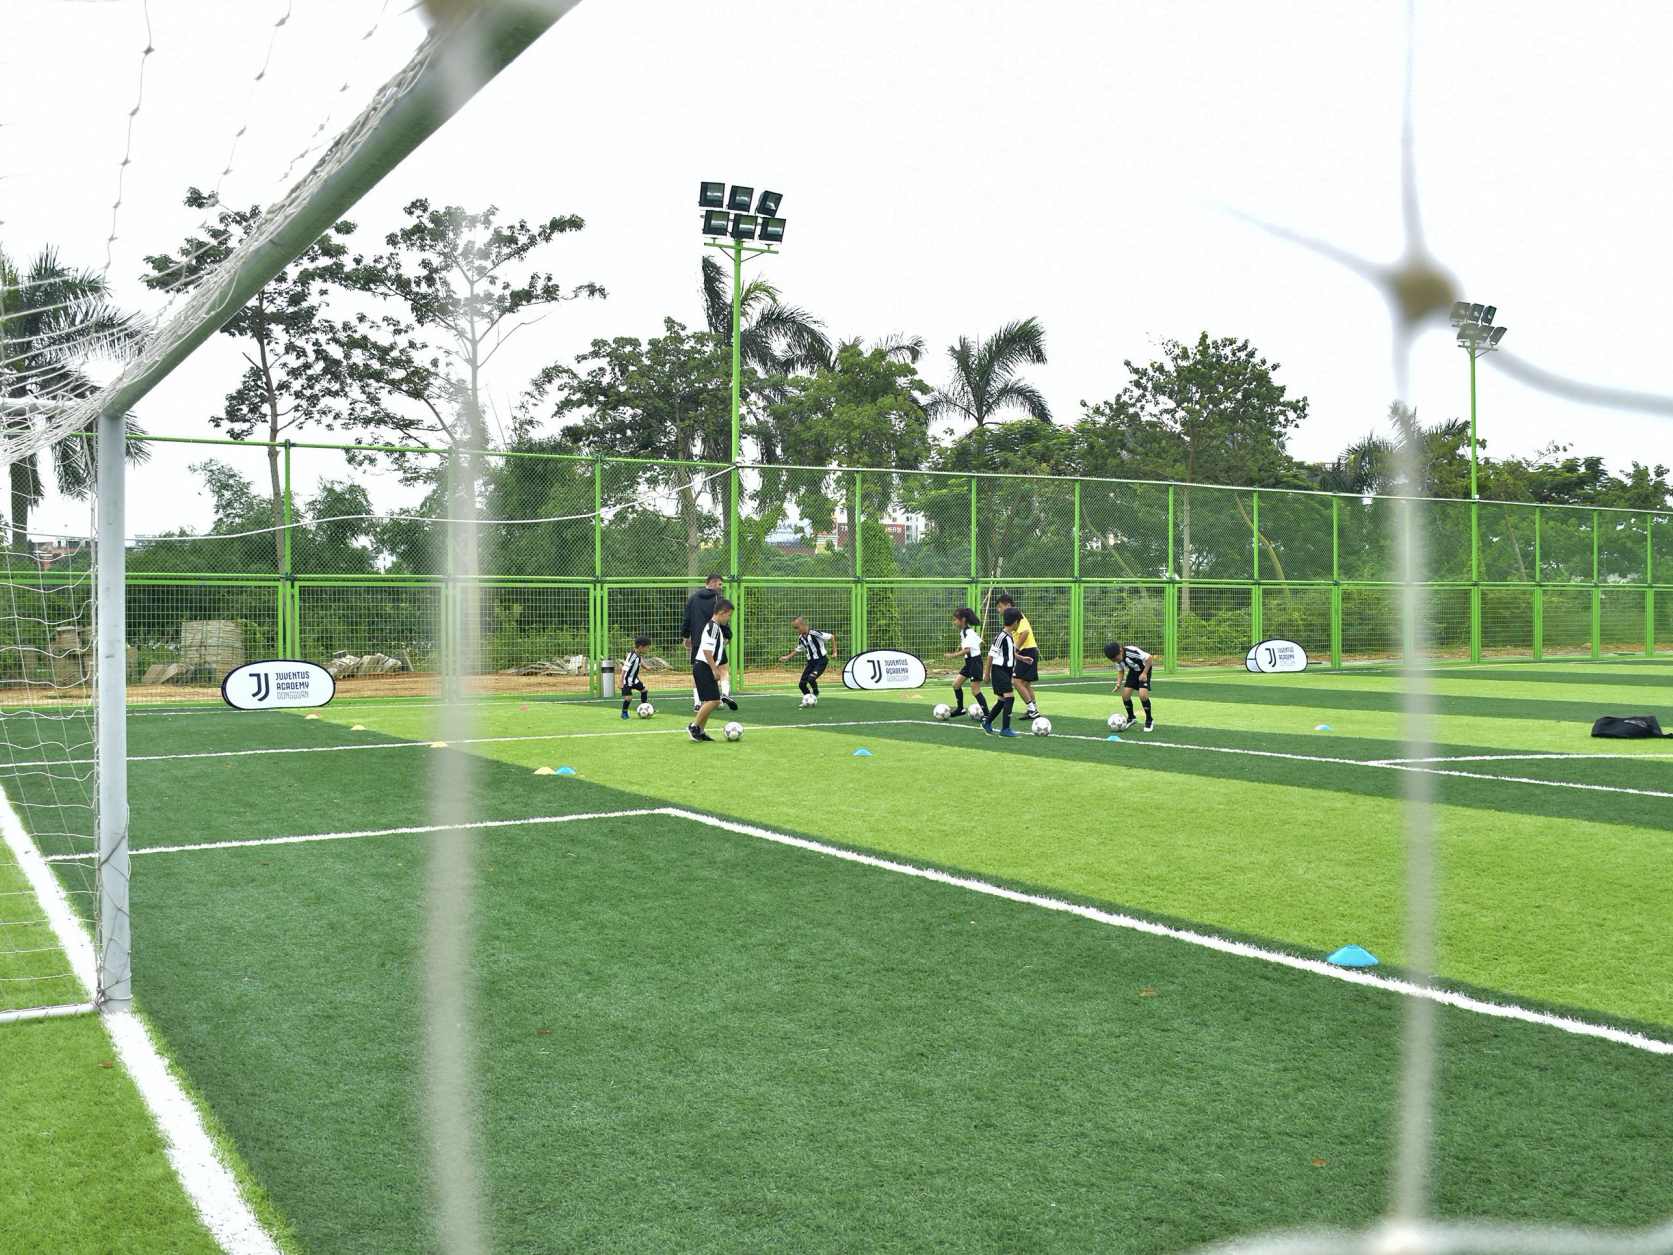 东莞石龙将建青少年足球培训基地  